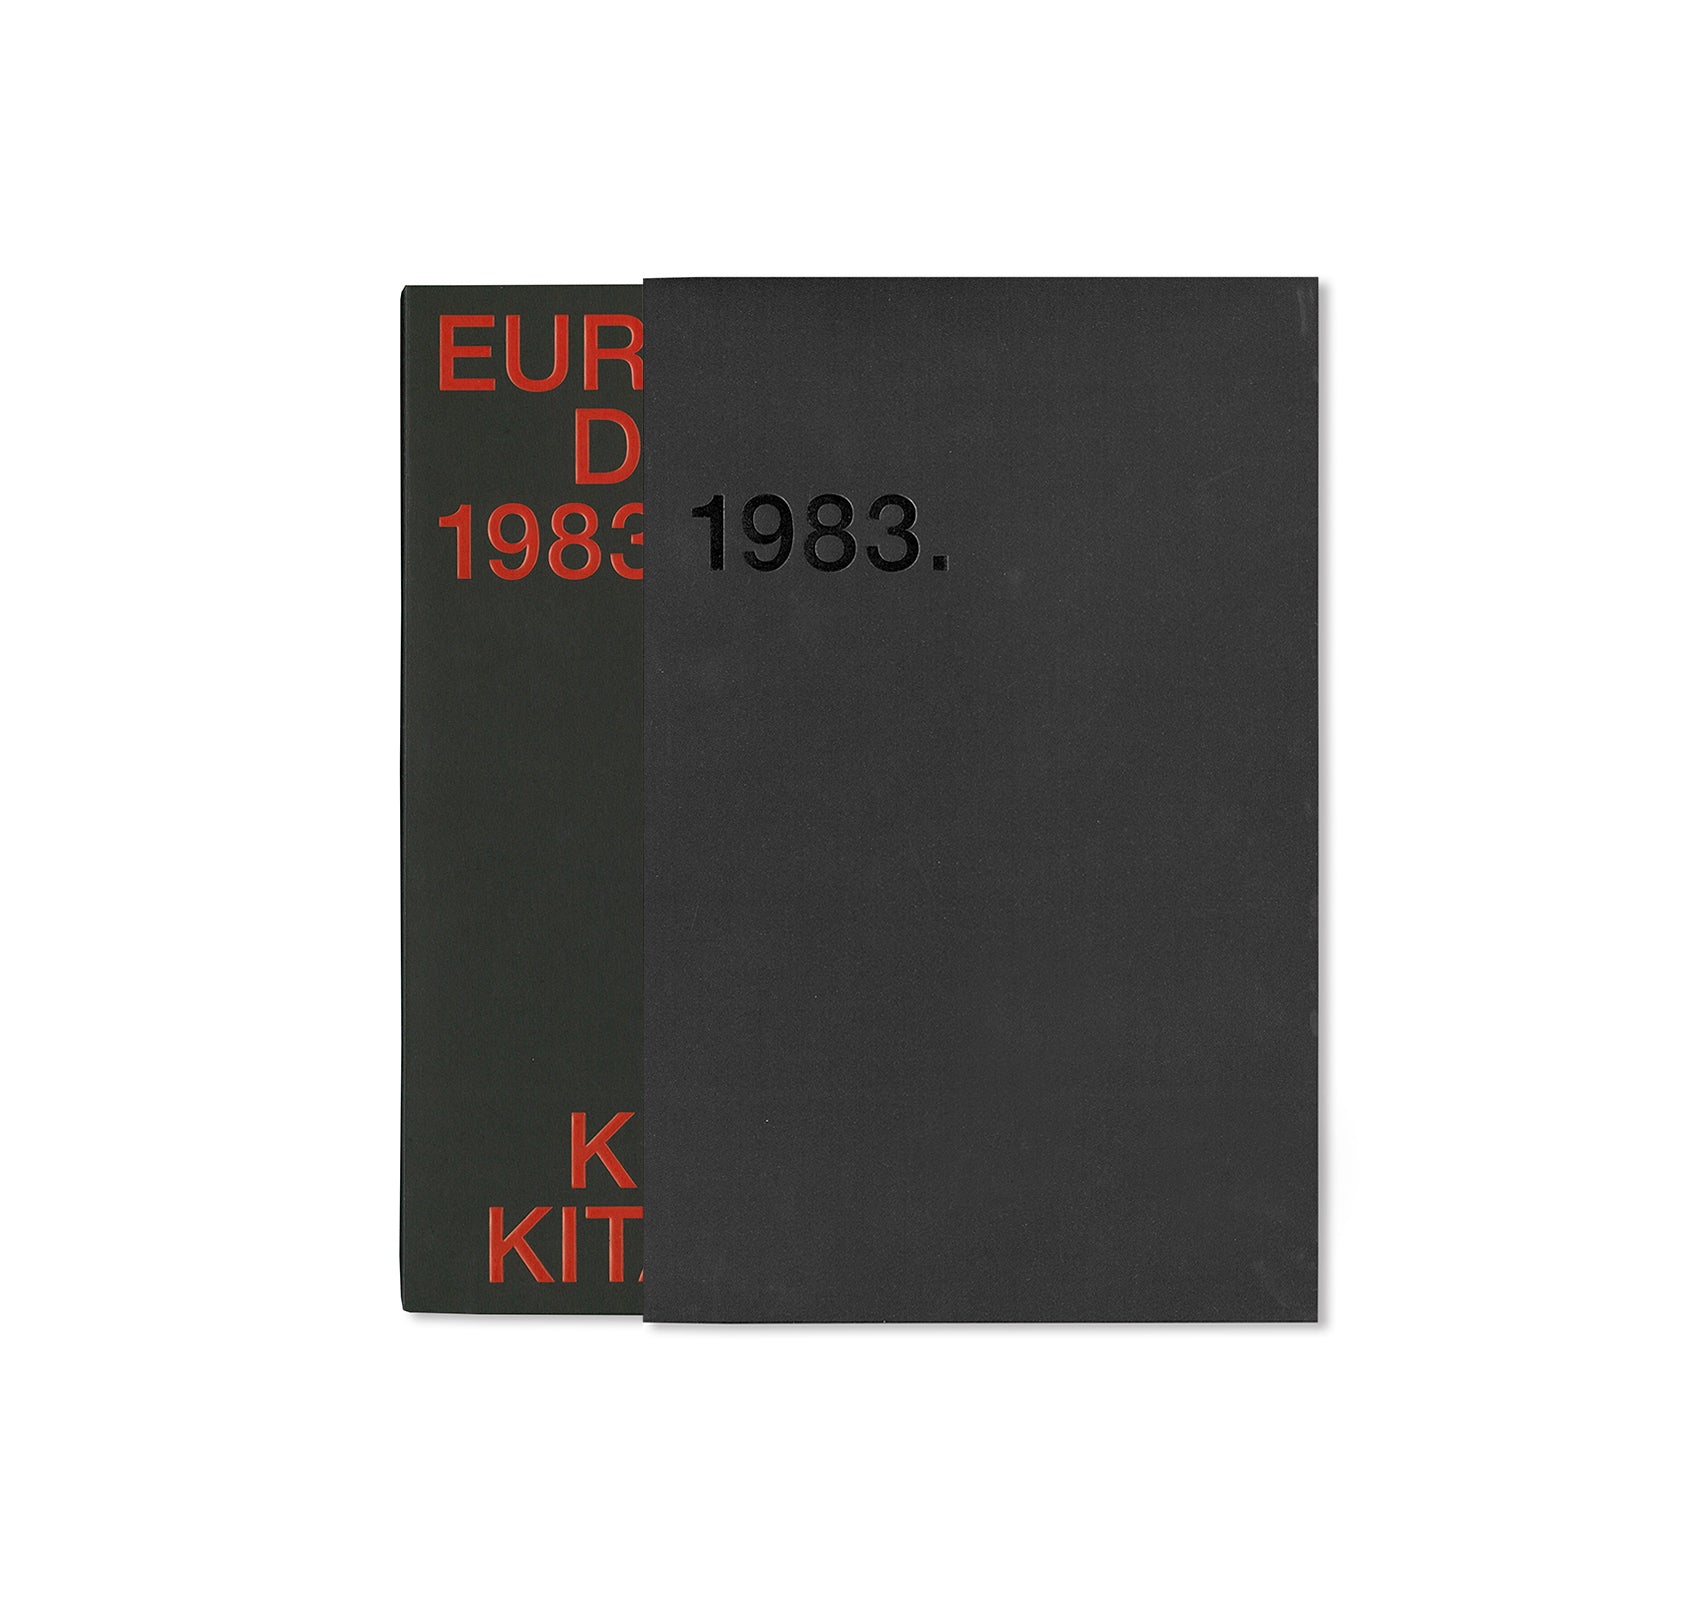 EUROPEAN DIARY 1983-1984 by Keizo Kitajima